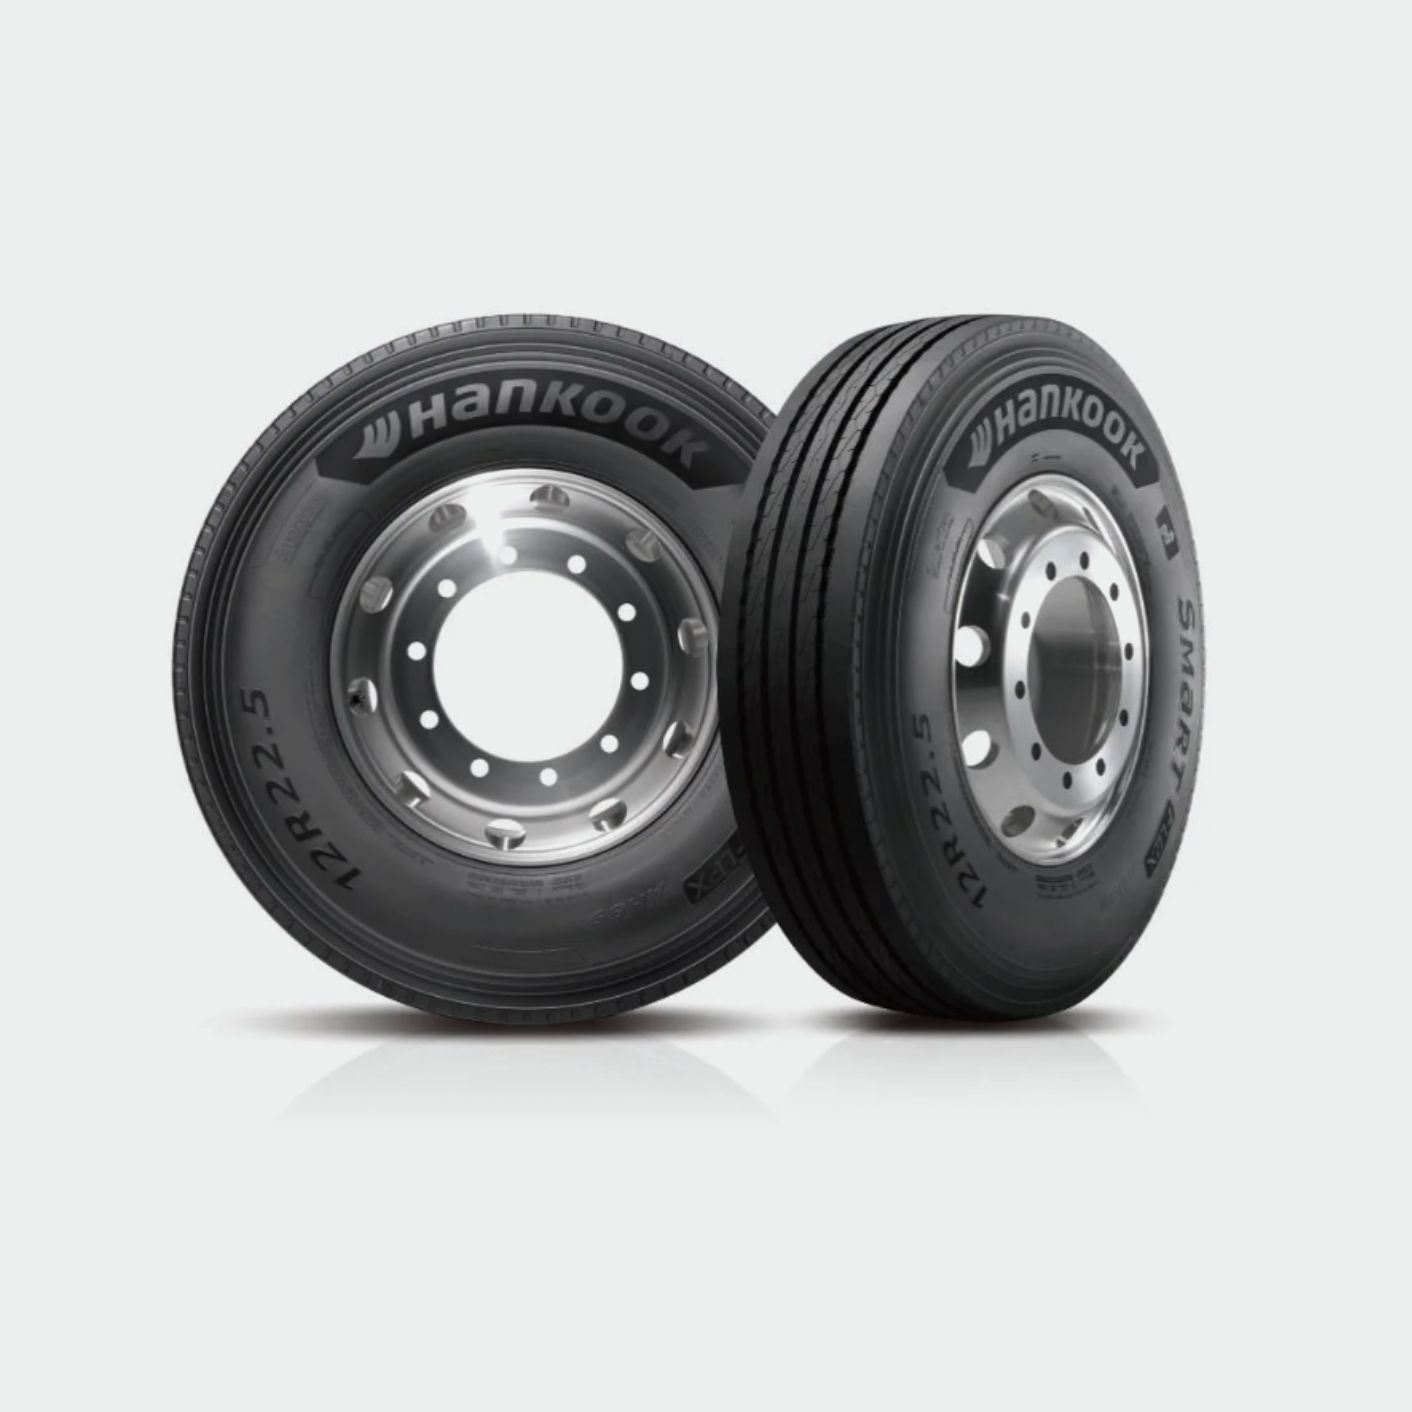 韩泰卡客车轮胎SMaRT Flex AH89新产品上市